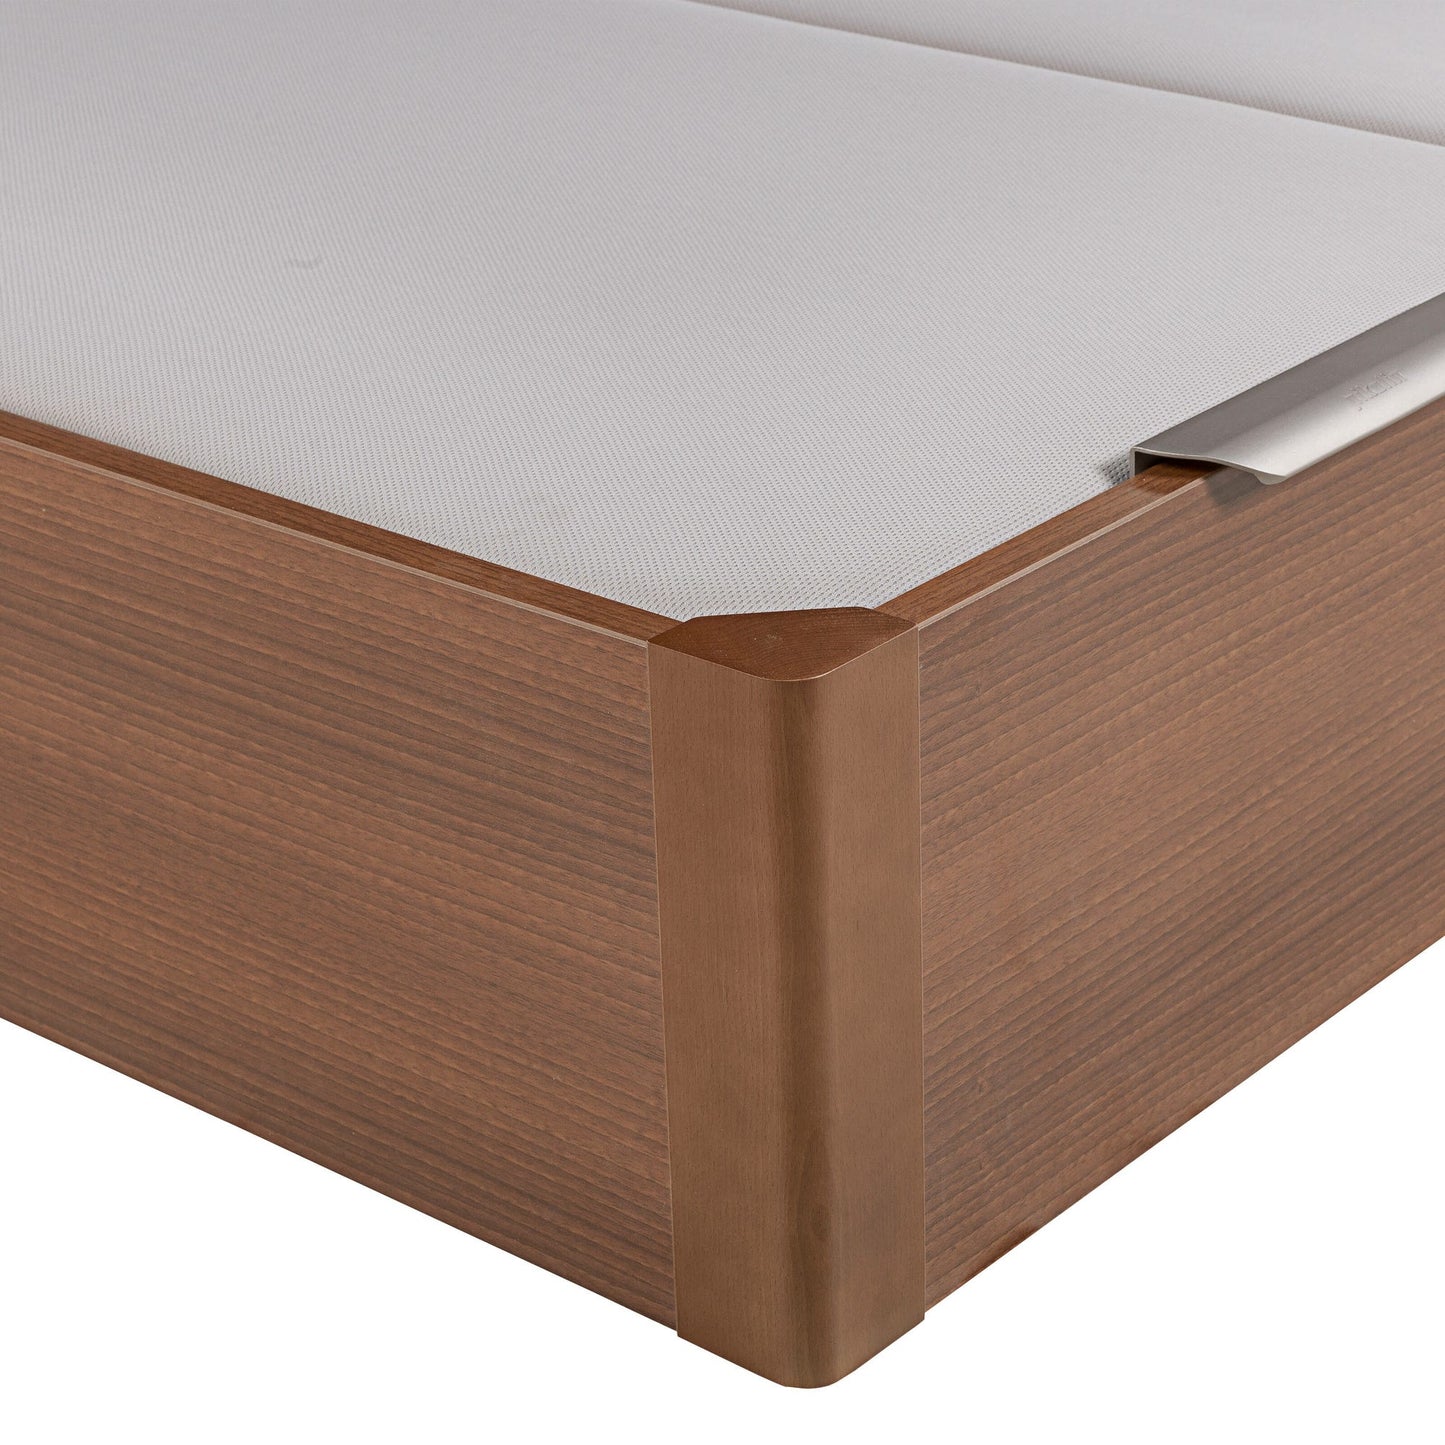 Canapé abatible de madera de tapa doble de color cerezo - DESIGN - 200x182